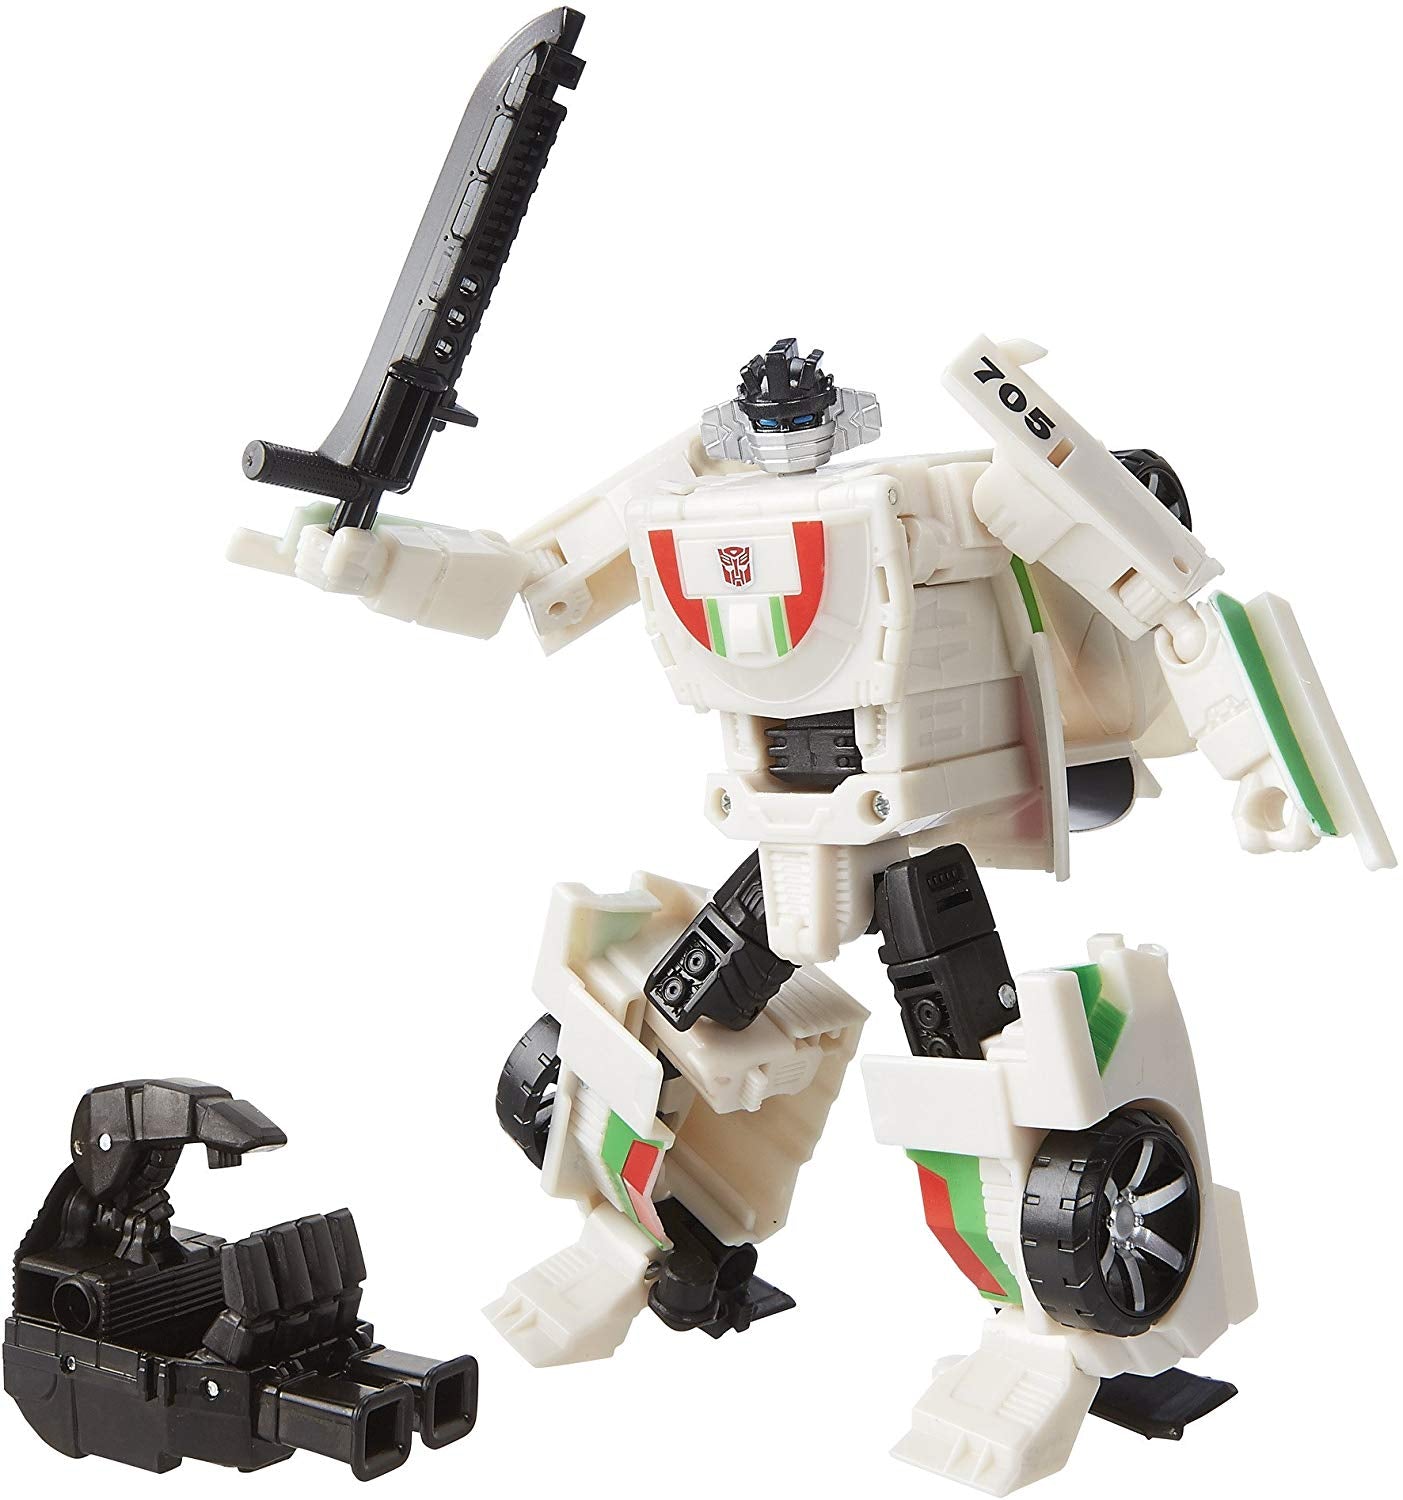 Transformers Generations Combiner Wars Deluxe Class Wheeljack Action Figure 2